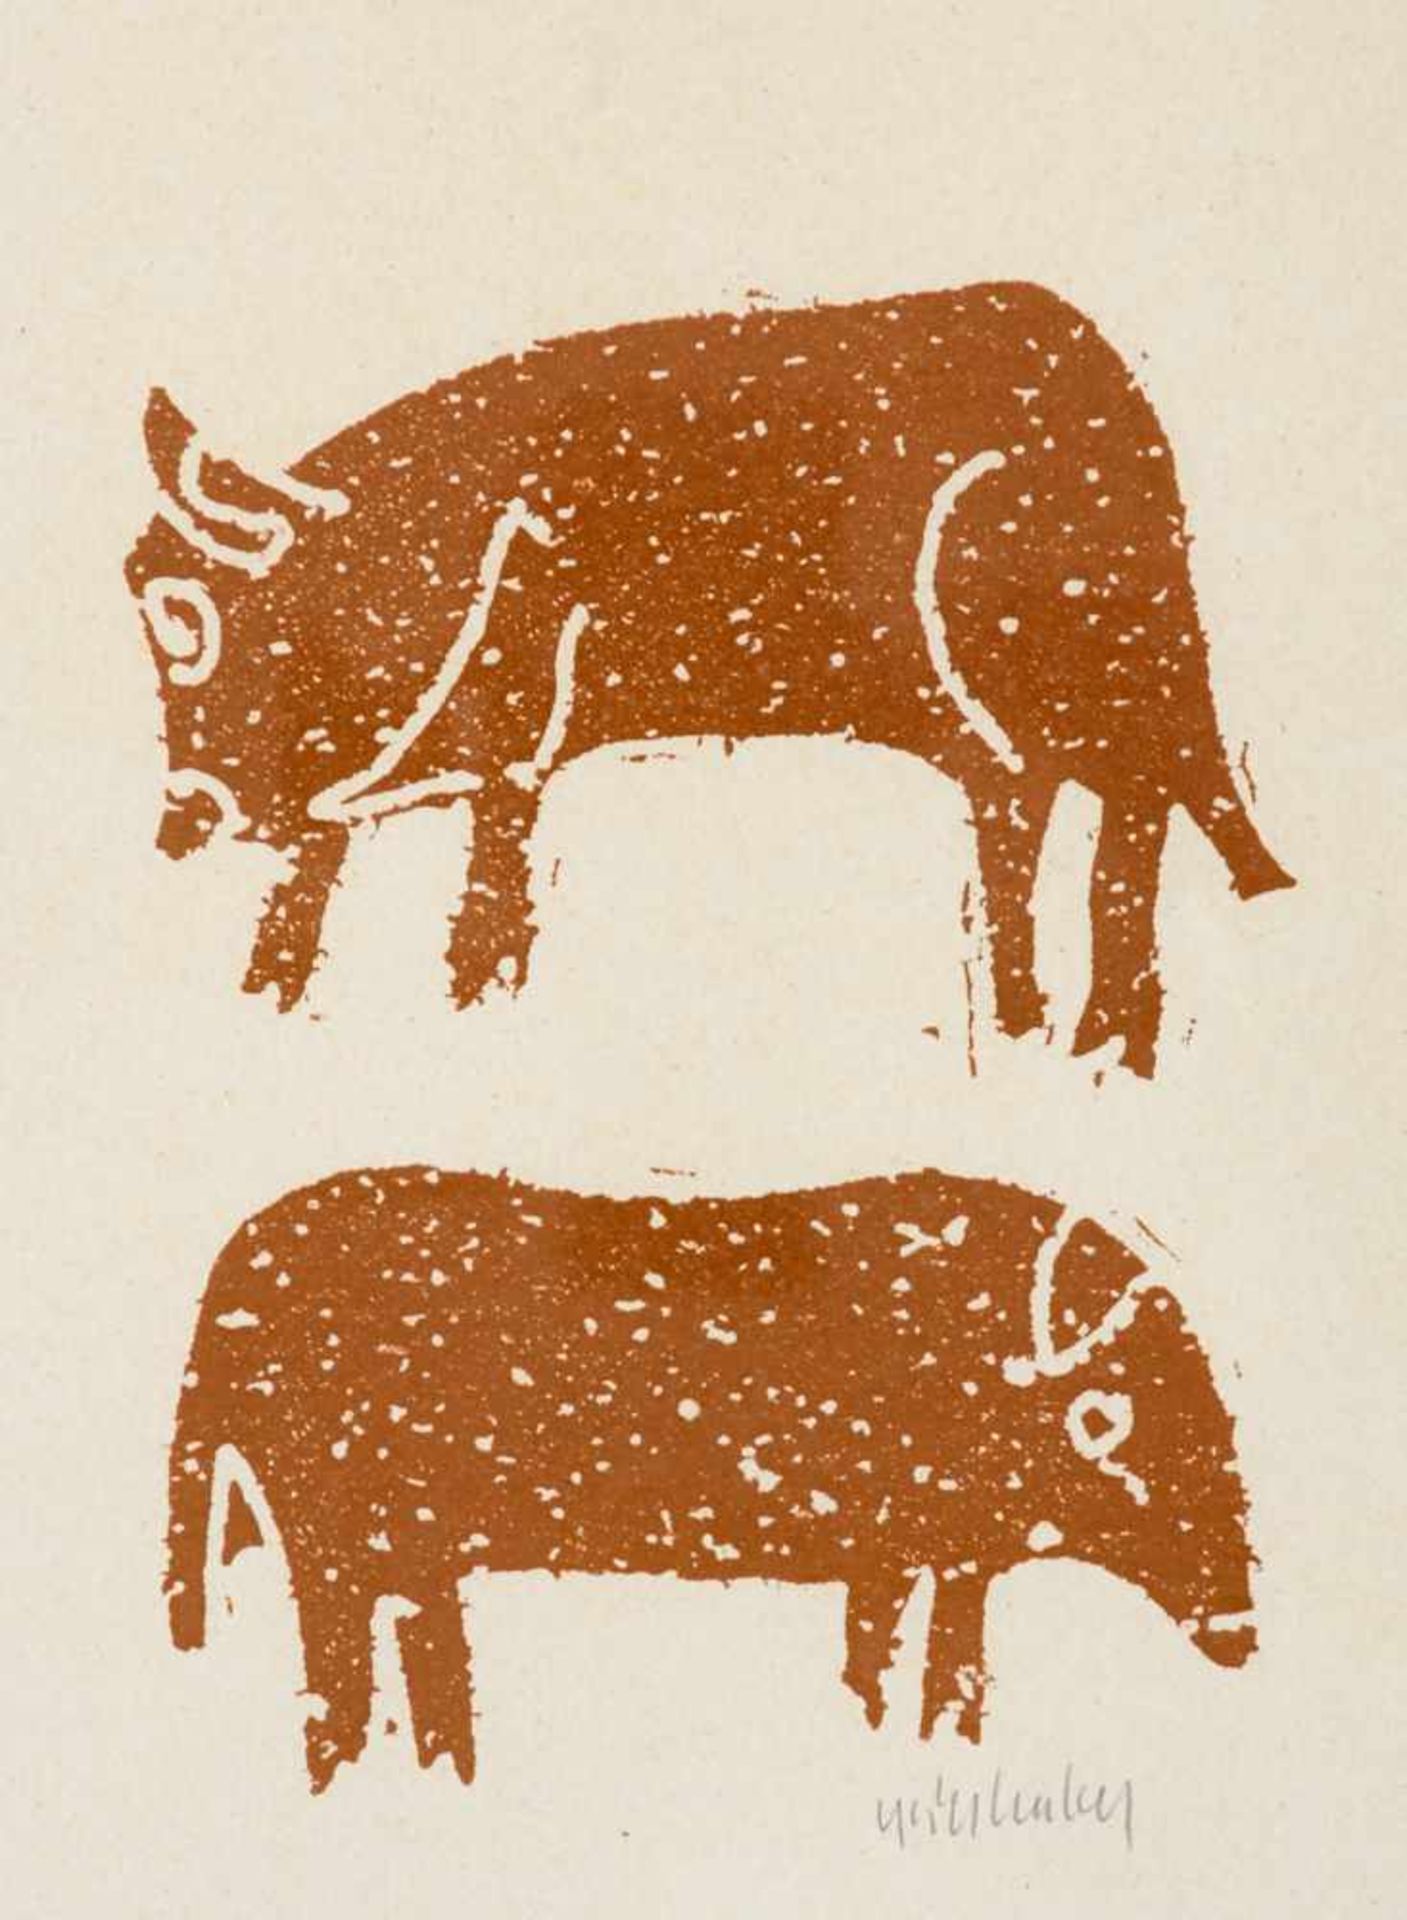 Grieshaber, HAP(Rot an der Rot 1909-1981 Eningen unter Achalm), Seine Tiere. Borkenschnitt in grüner